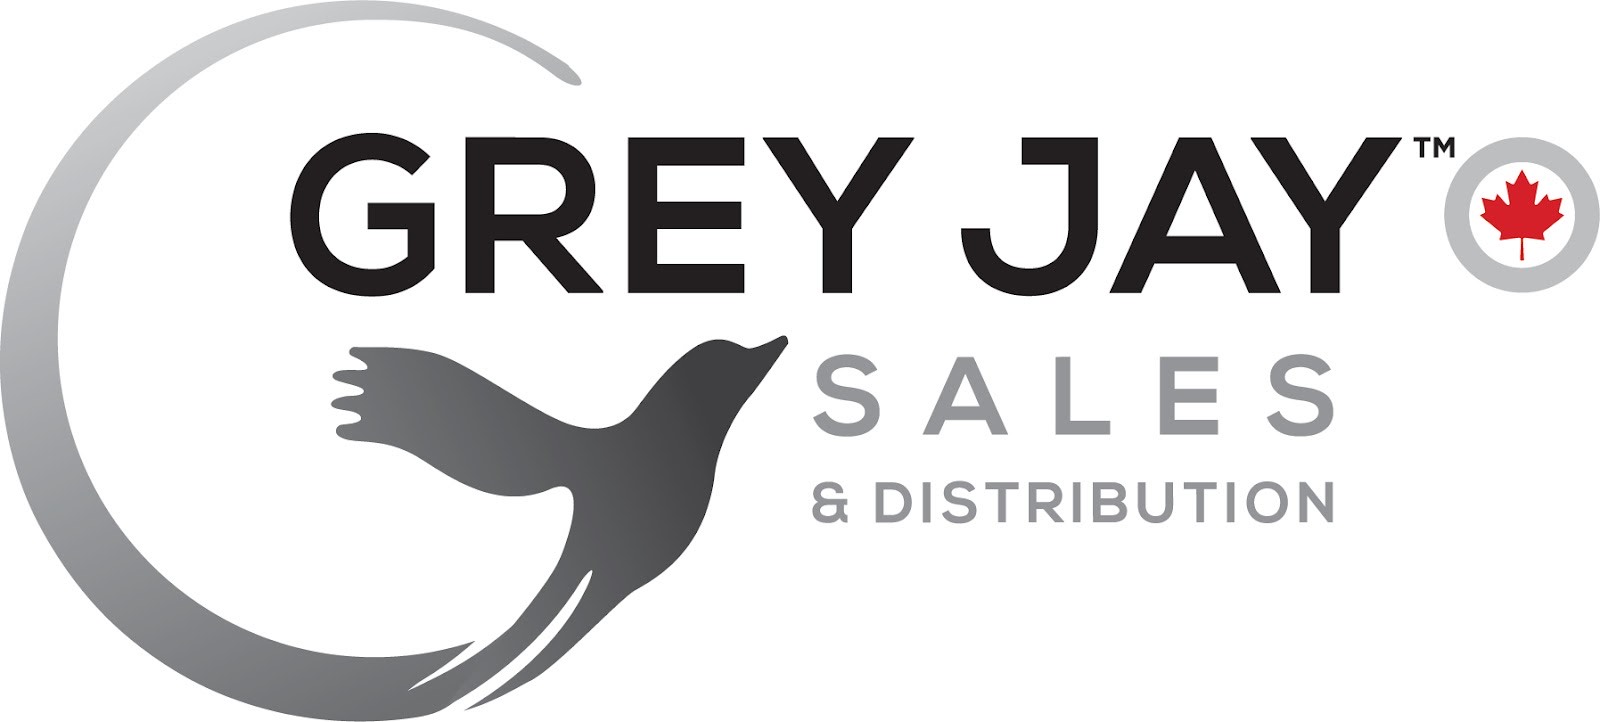 Grey Jay Sales 